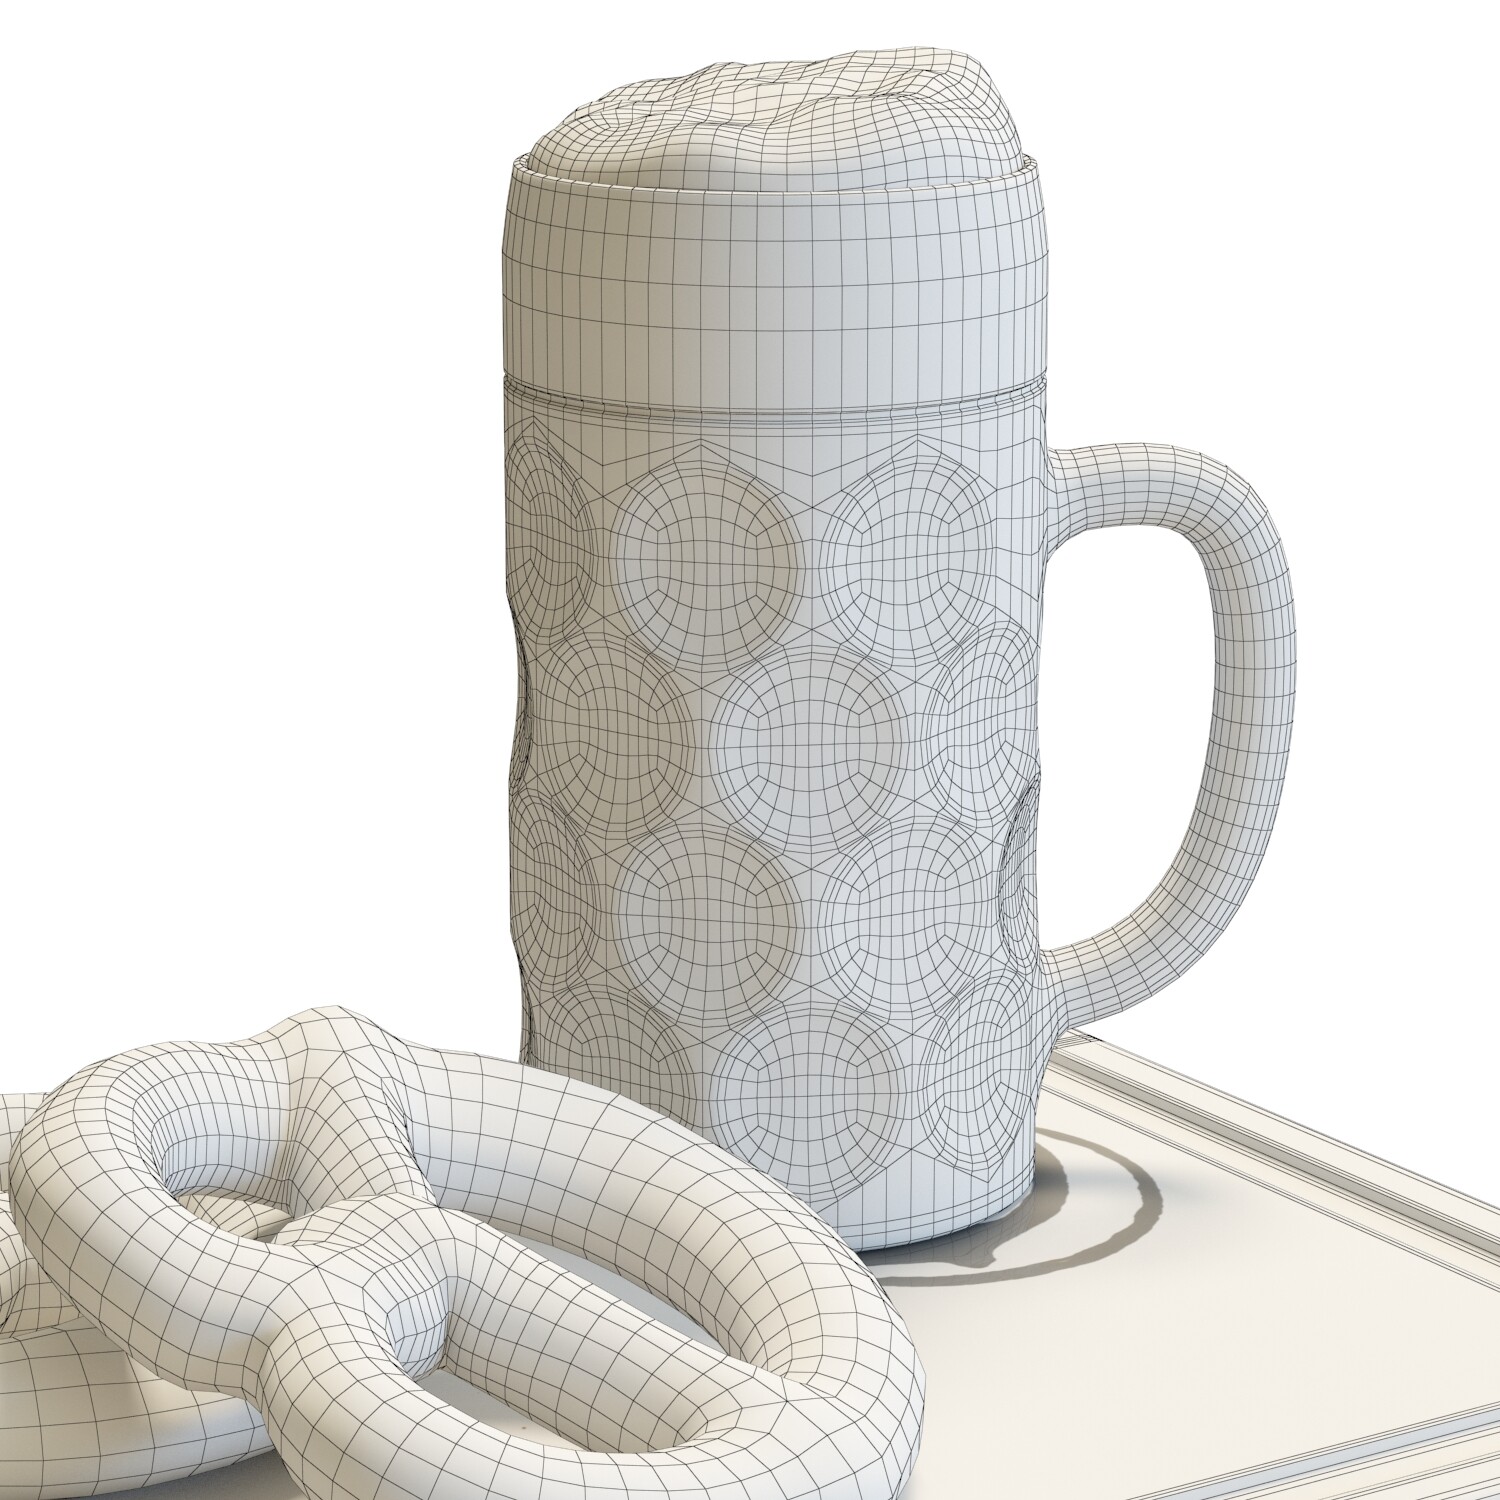 Beer mug 3D model 3D printable